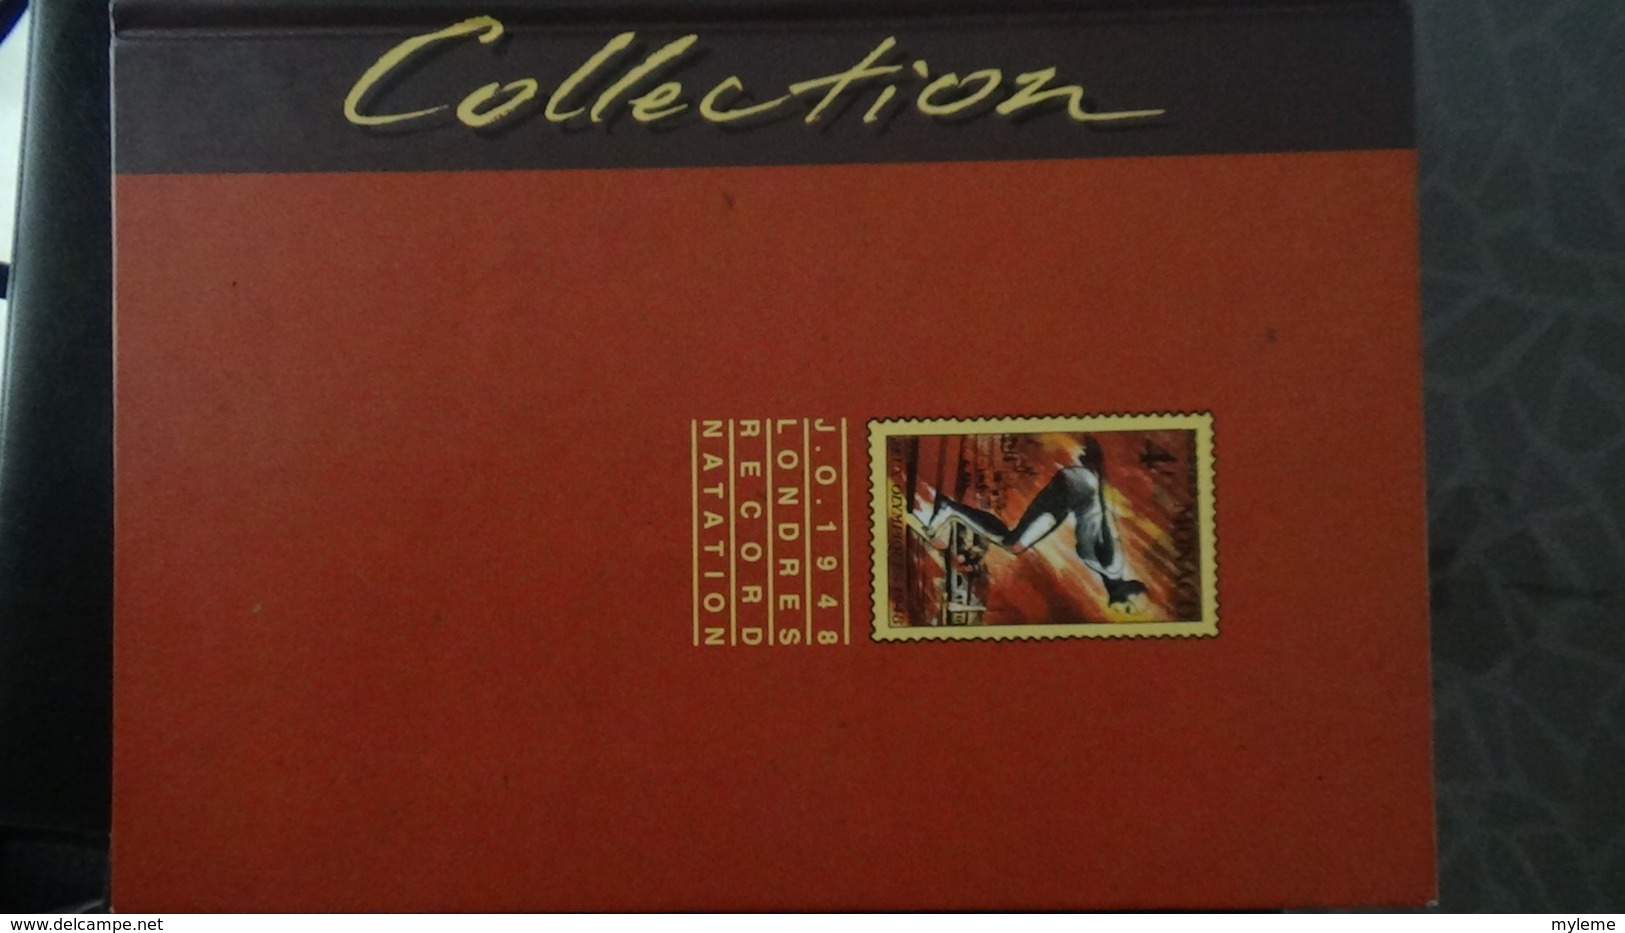 Bel ensemble de courriers, blocs et timbres croix rouges oblitérés de France dont 1 N° 306 ** (1 dent un peu courte) !!!